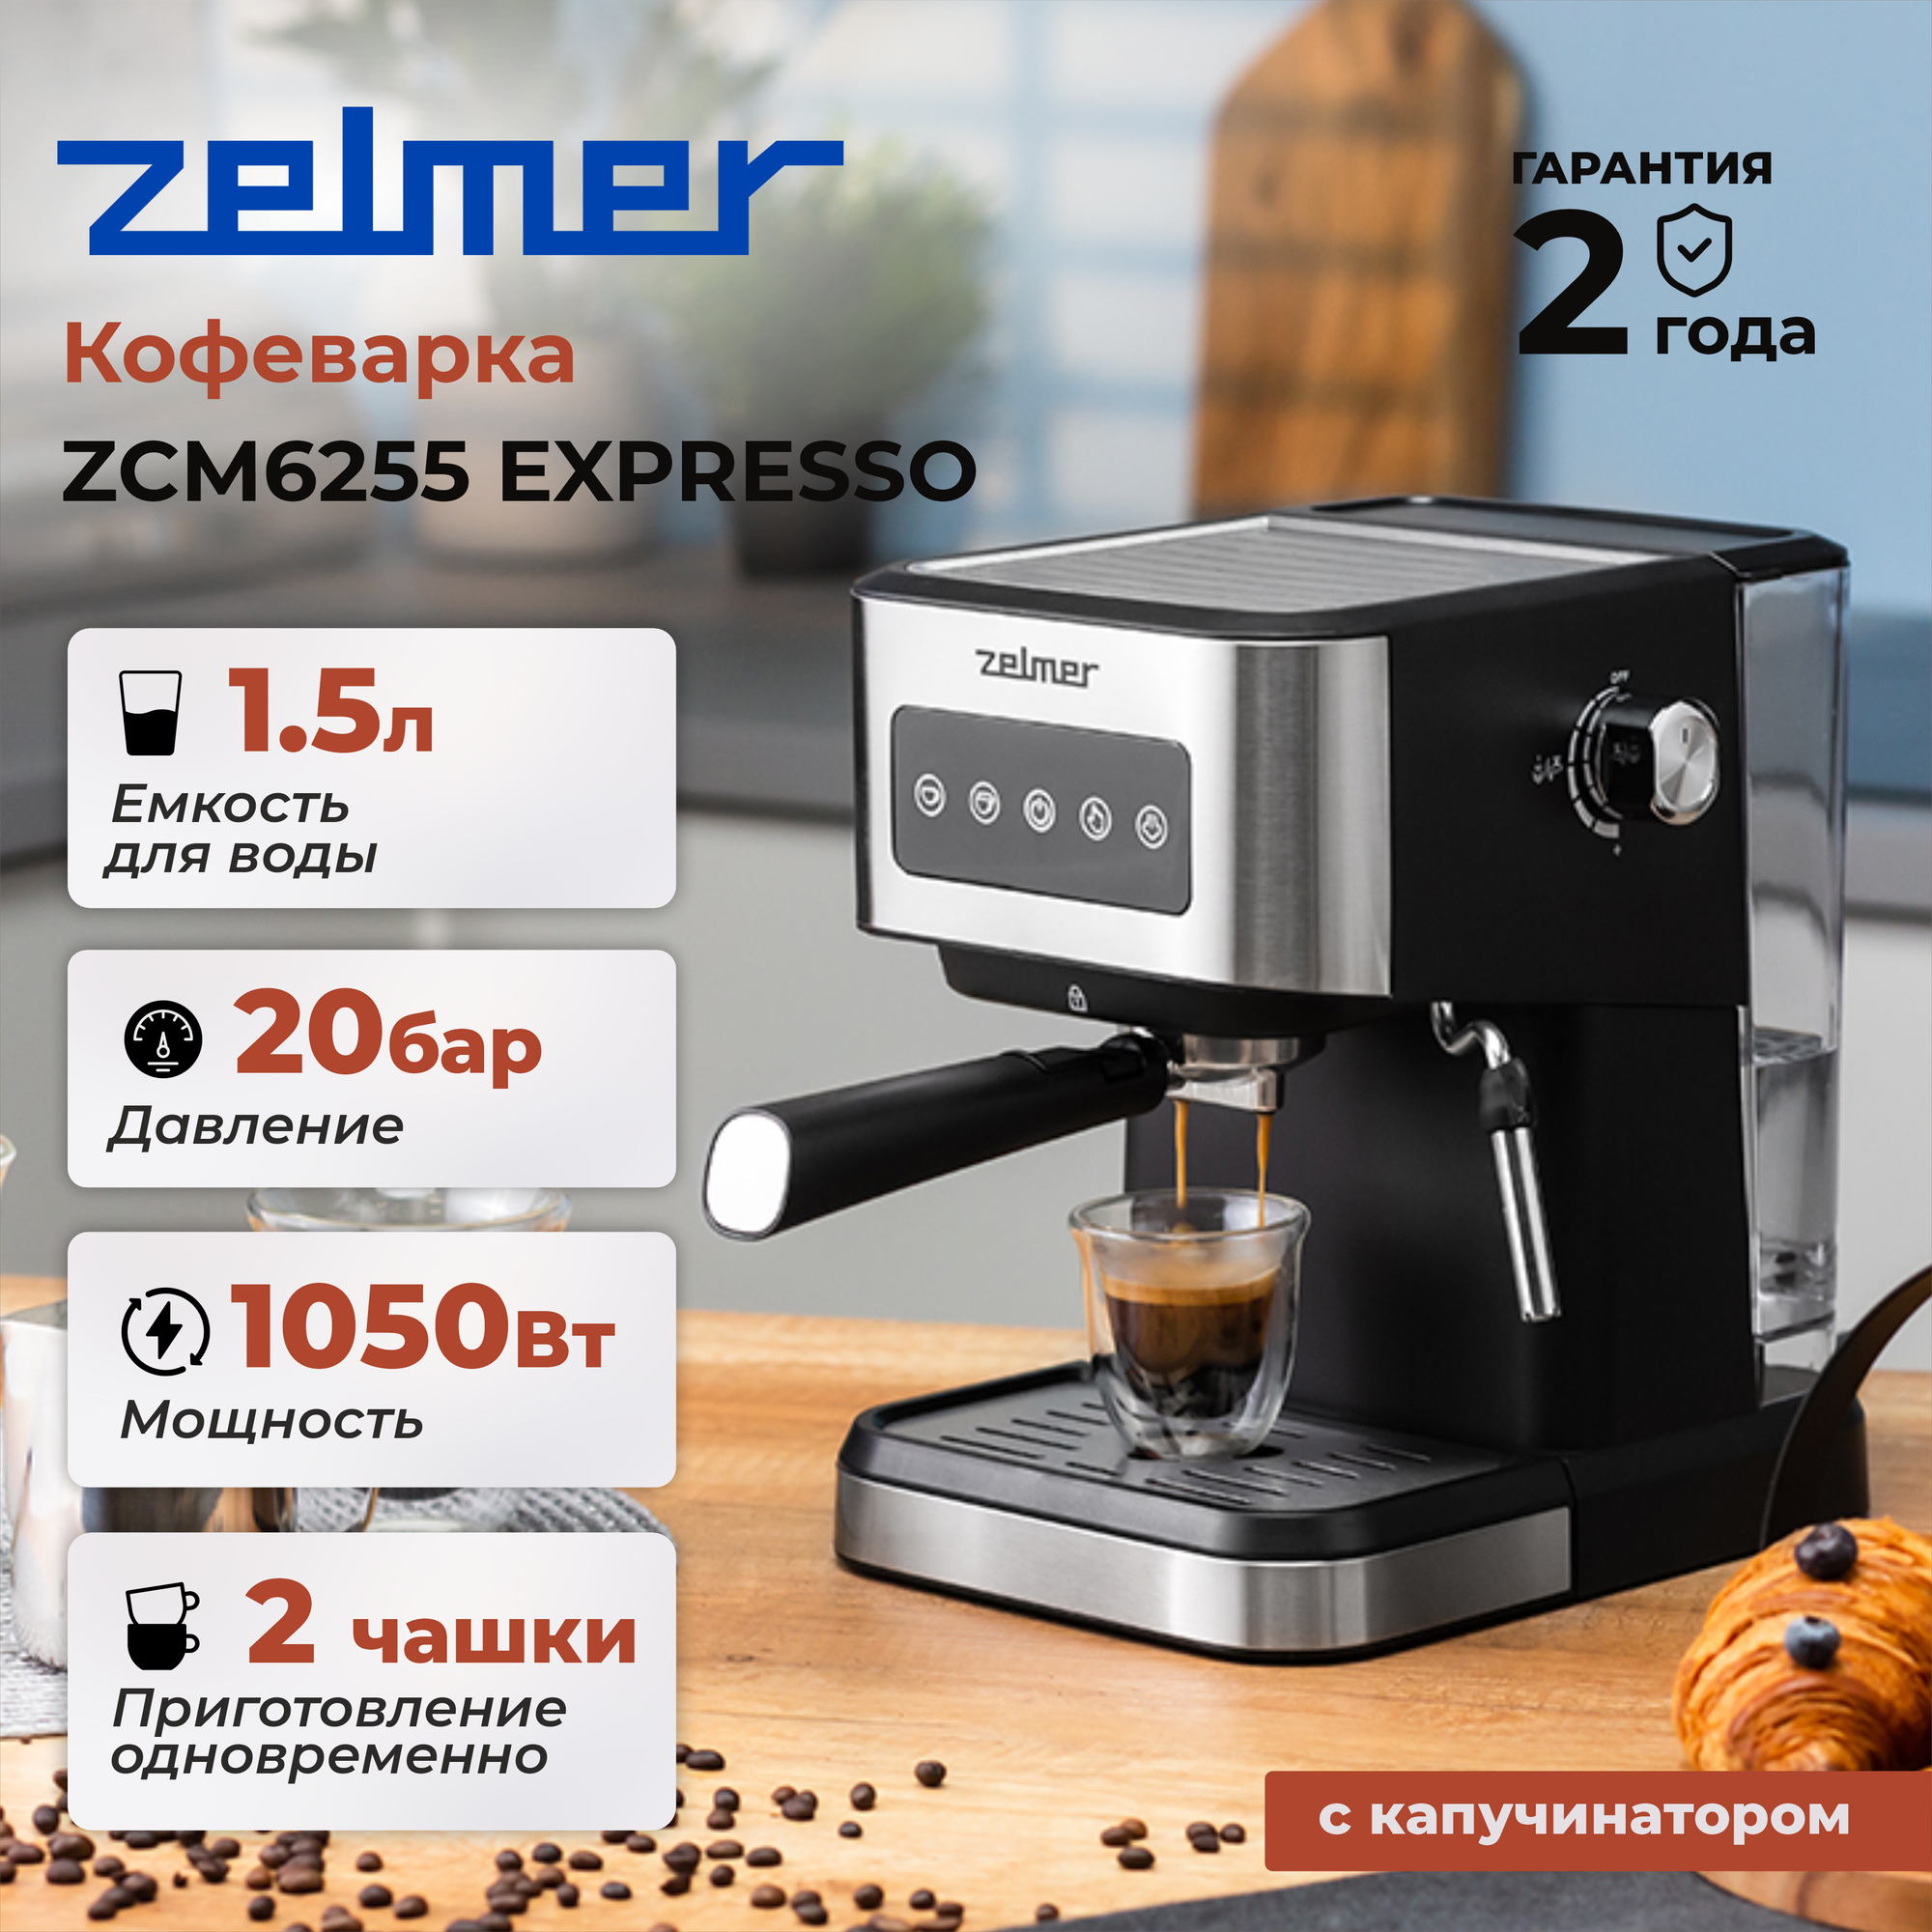 Кофеварка ZELMER EXPRESSO ZCM6255, черный